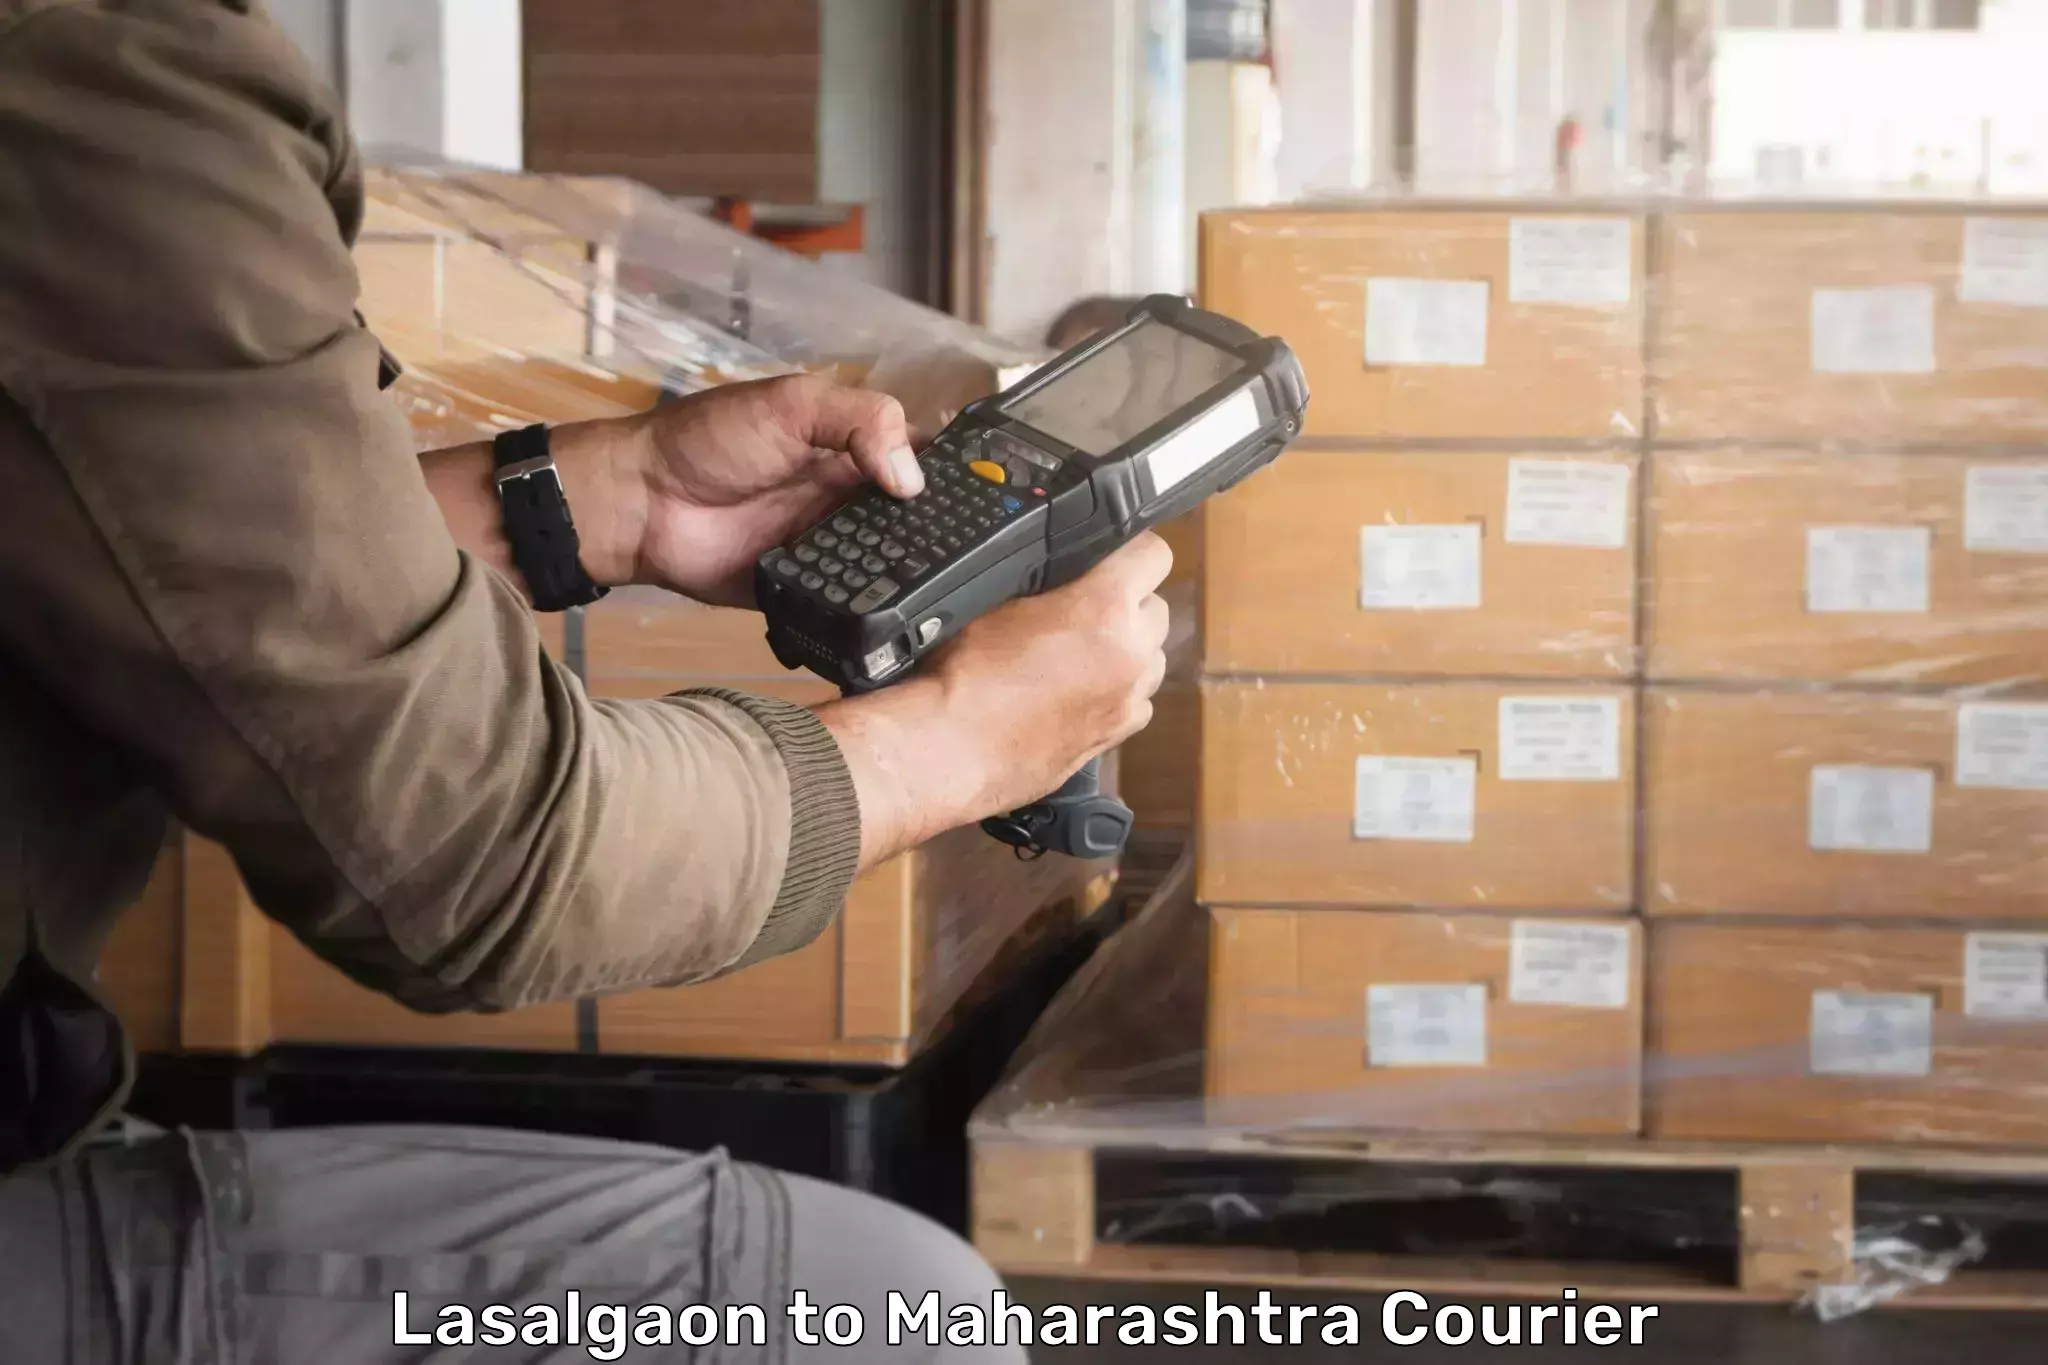 International parcel service Lasalgaon to Pandharkawada